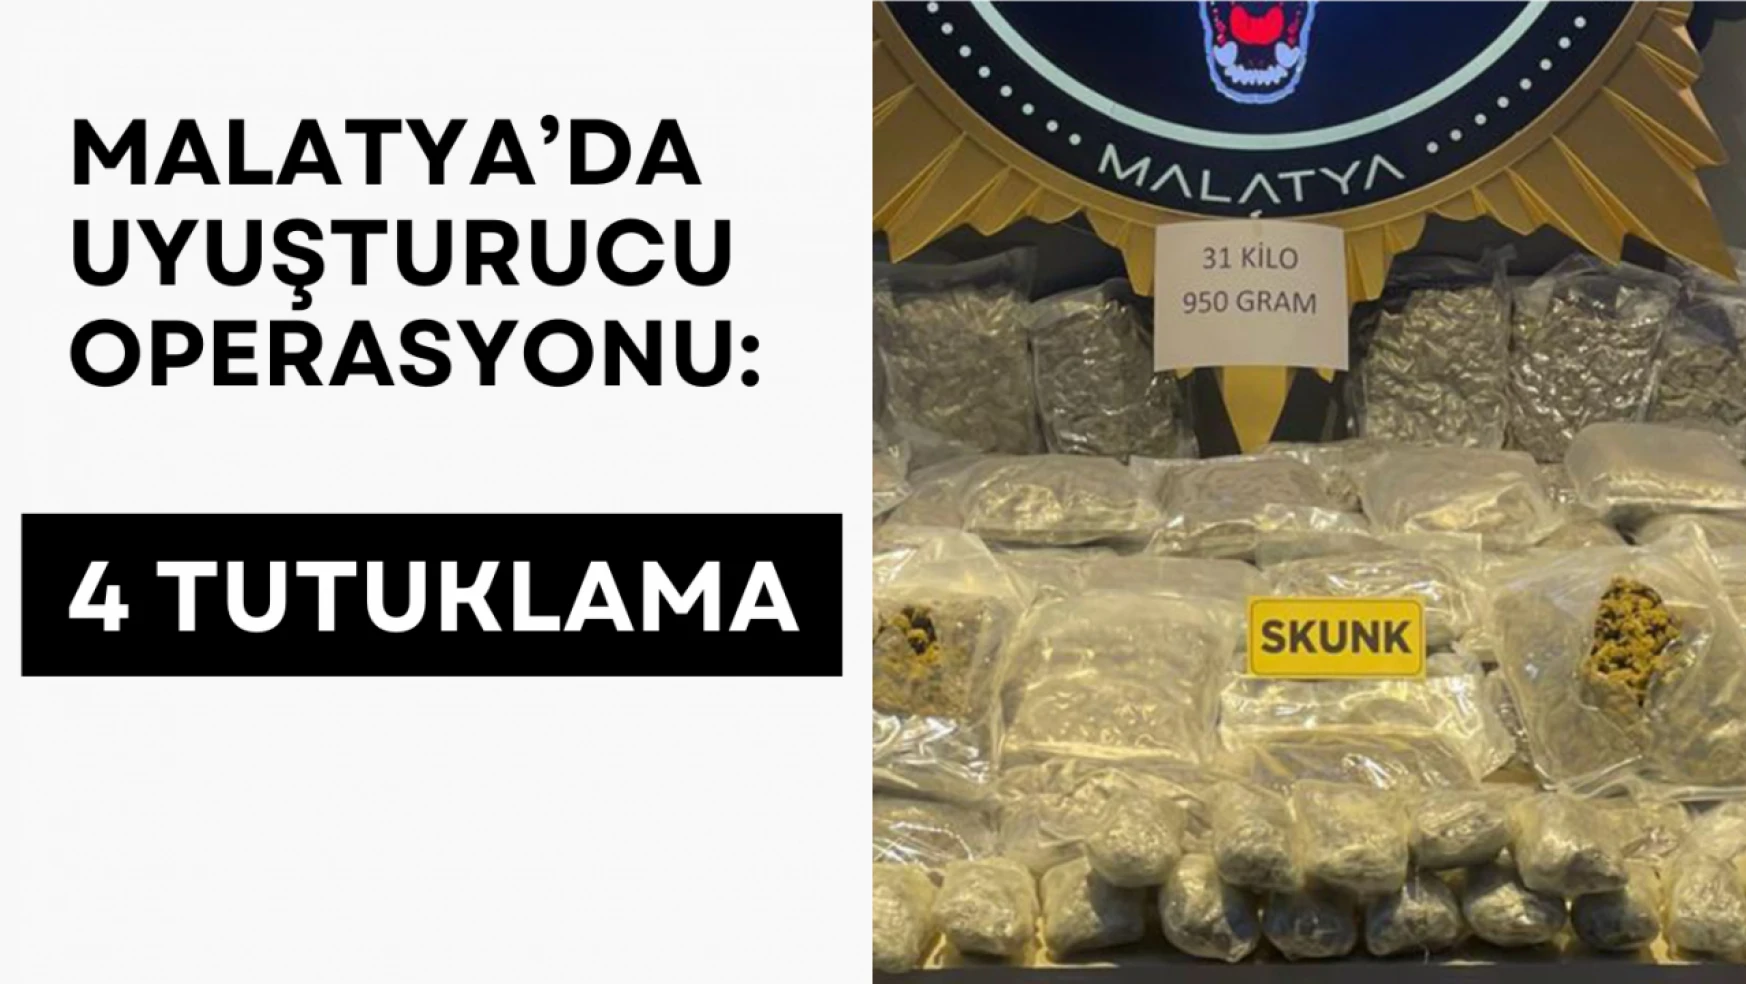 Malatya'da uyuşturucu operasyonu: 4 tutuklama